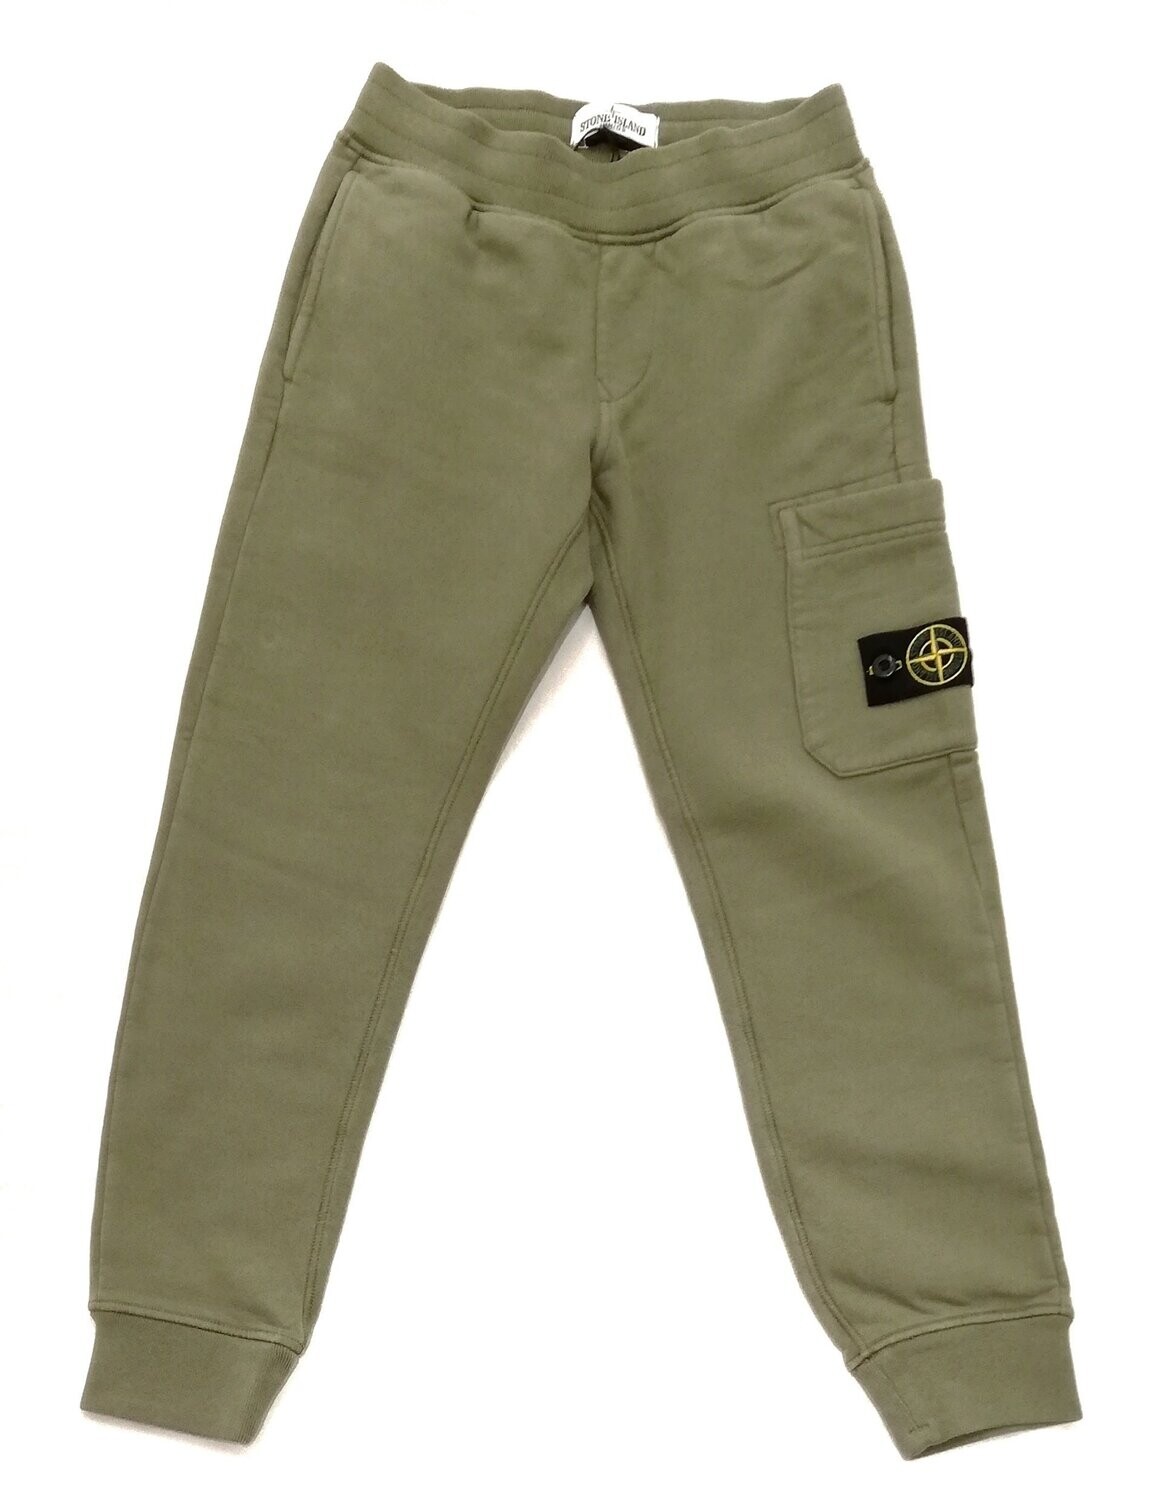 Stone Island - Pantalone felpa verde militare felpato, size: 4 anni